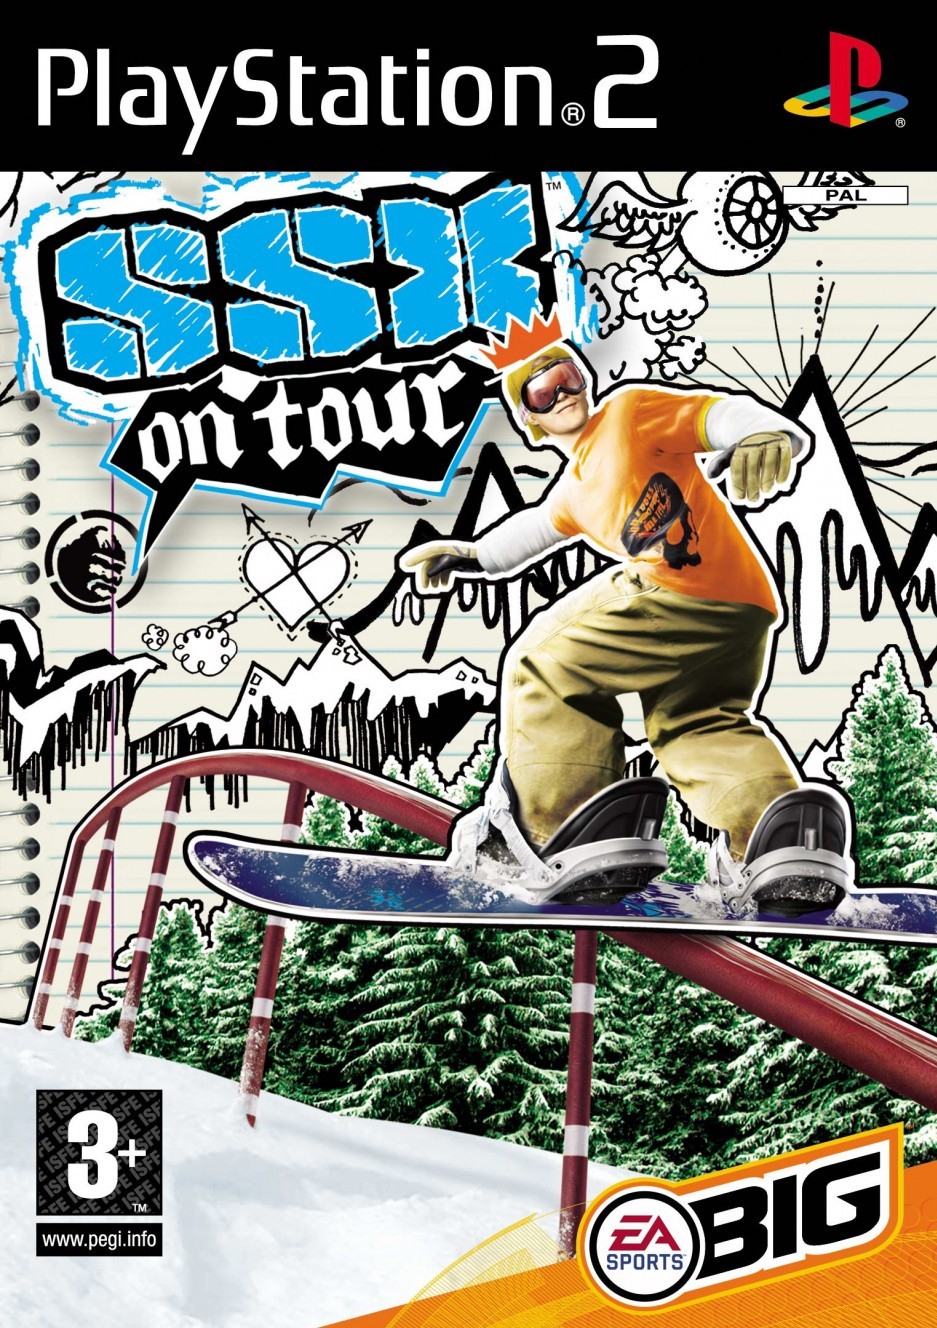 ssx on tour ps2 soundtrack